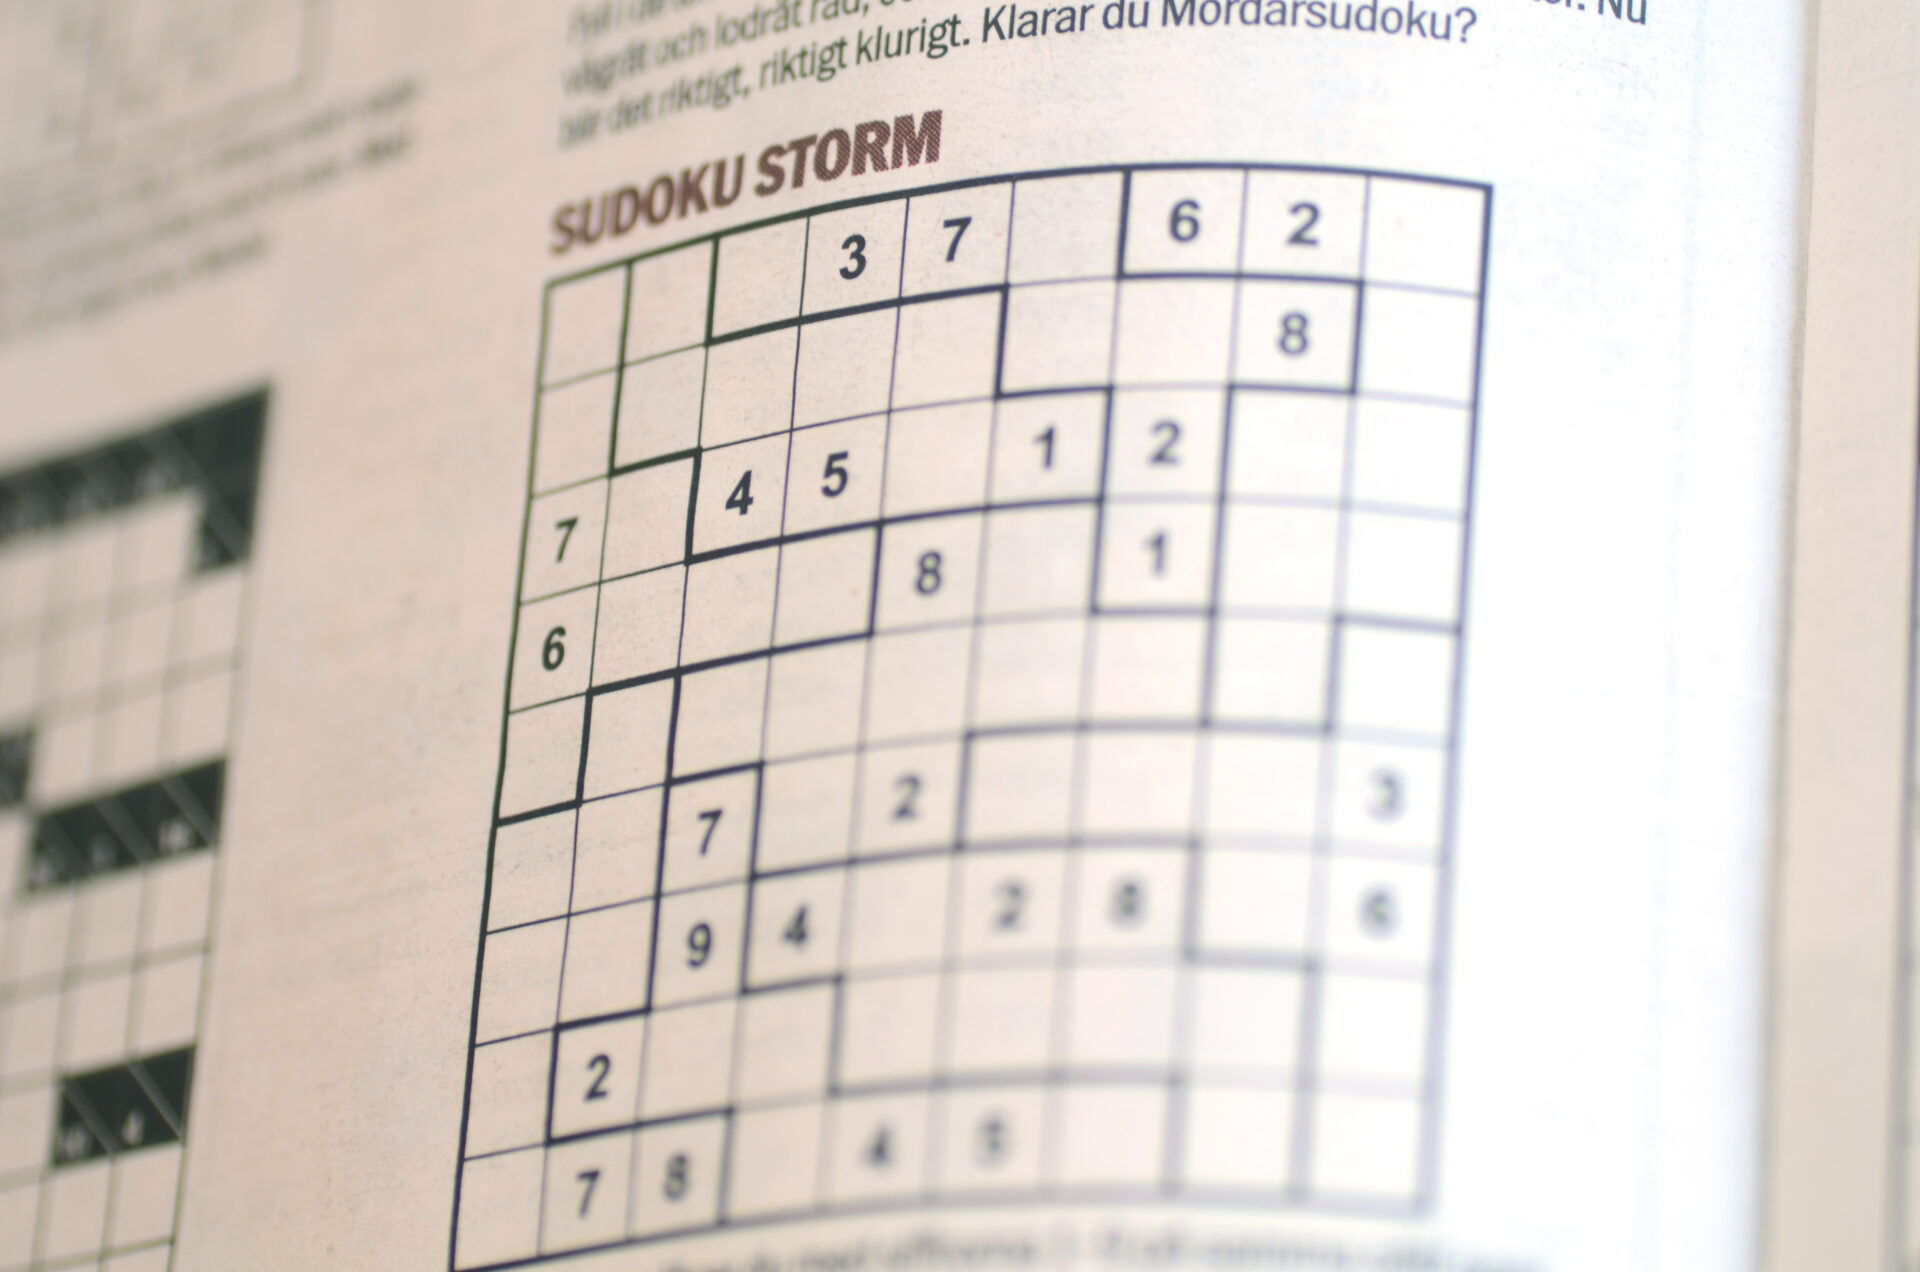 Sudoku Storm